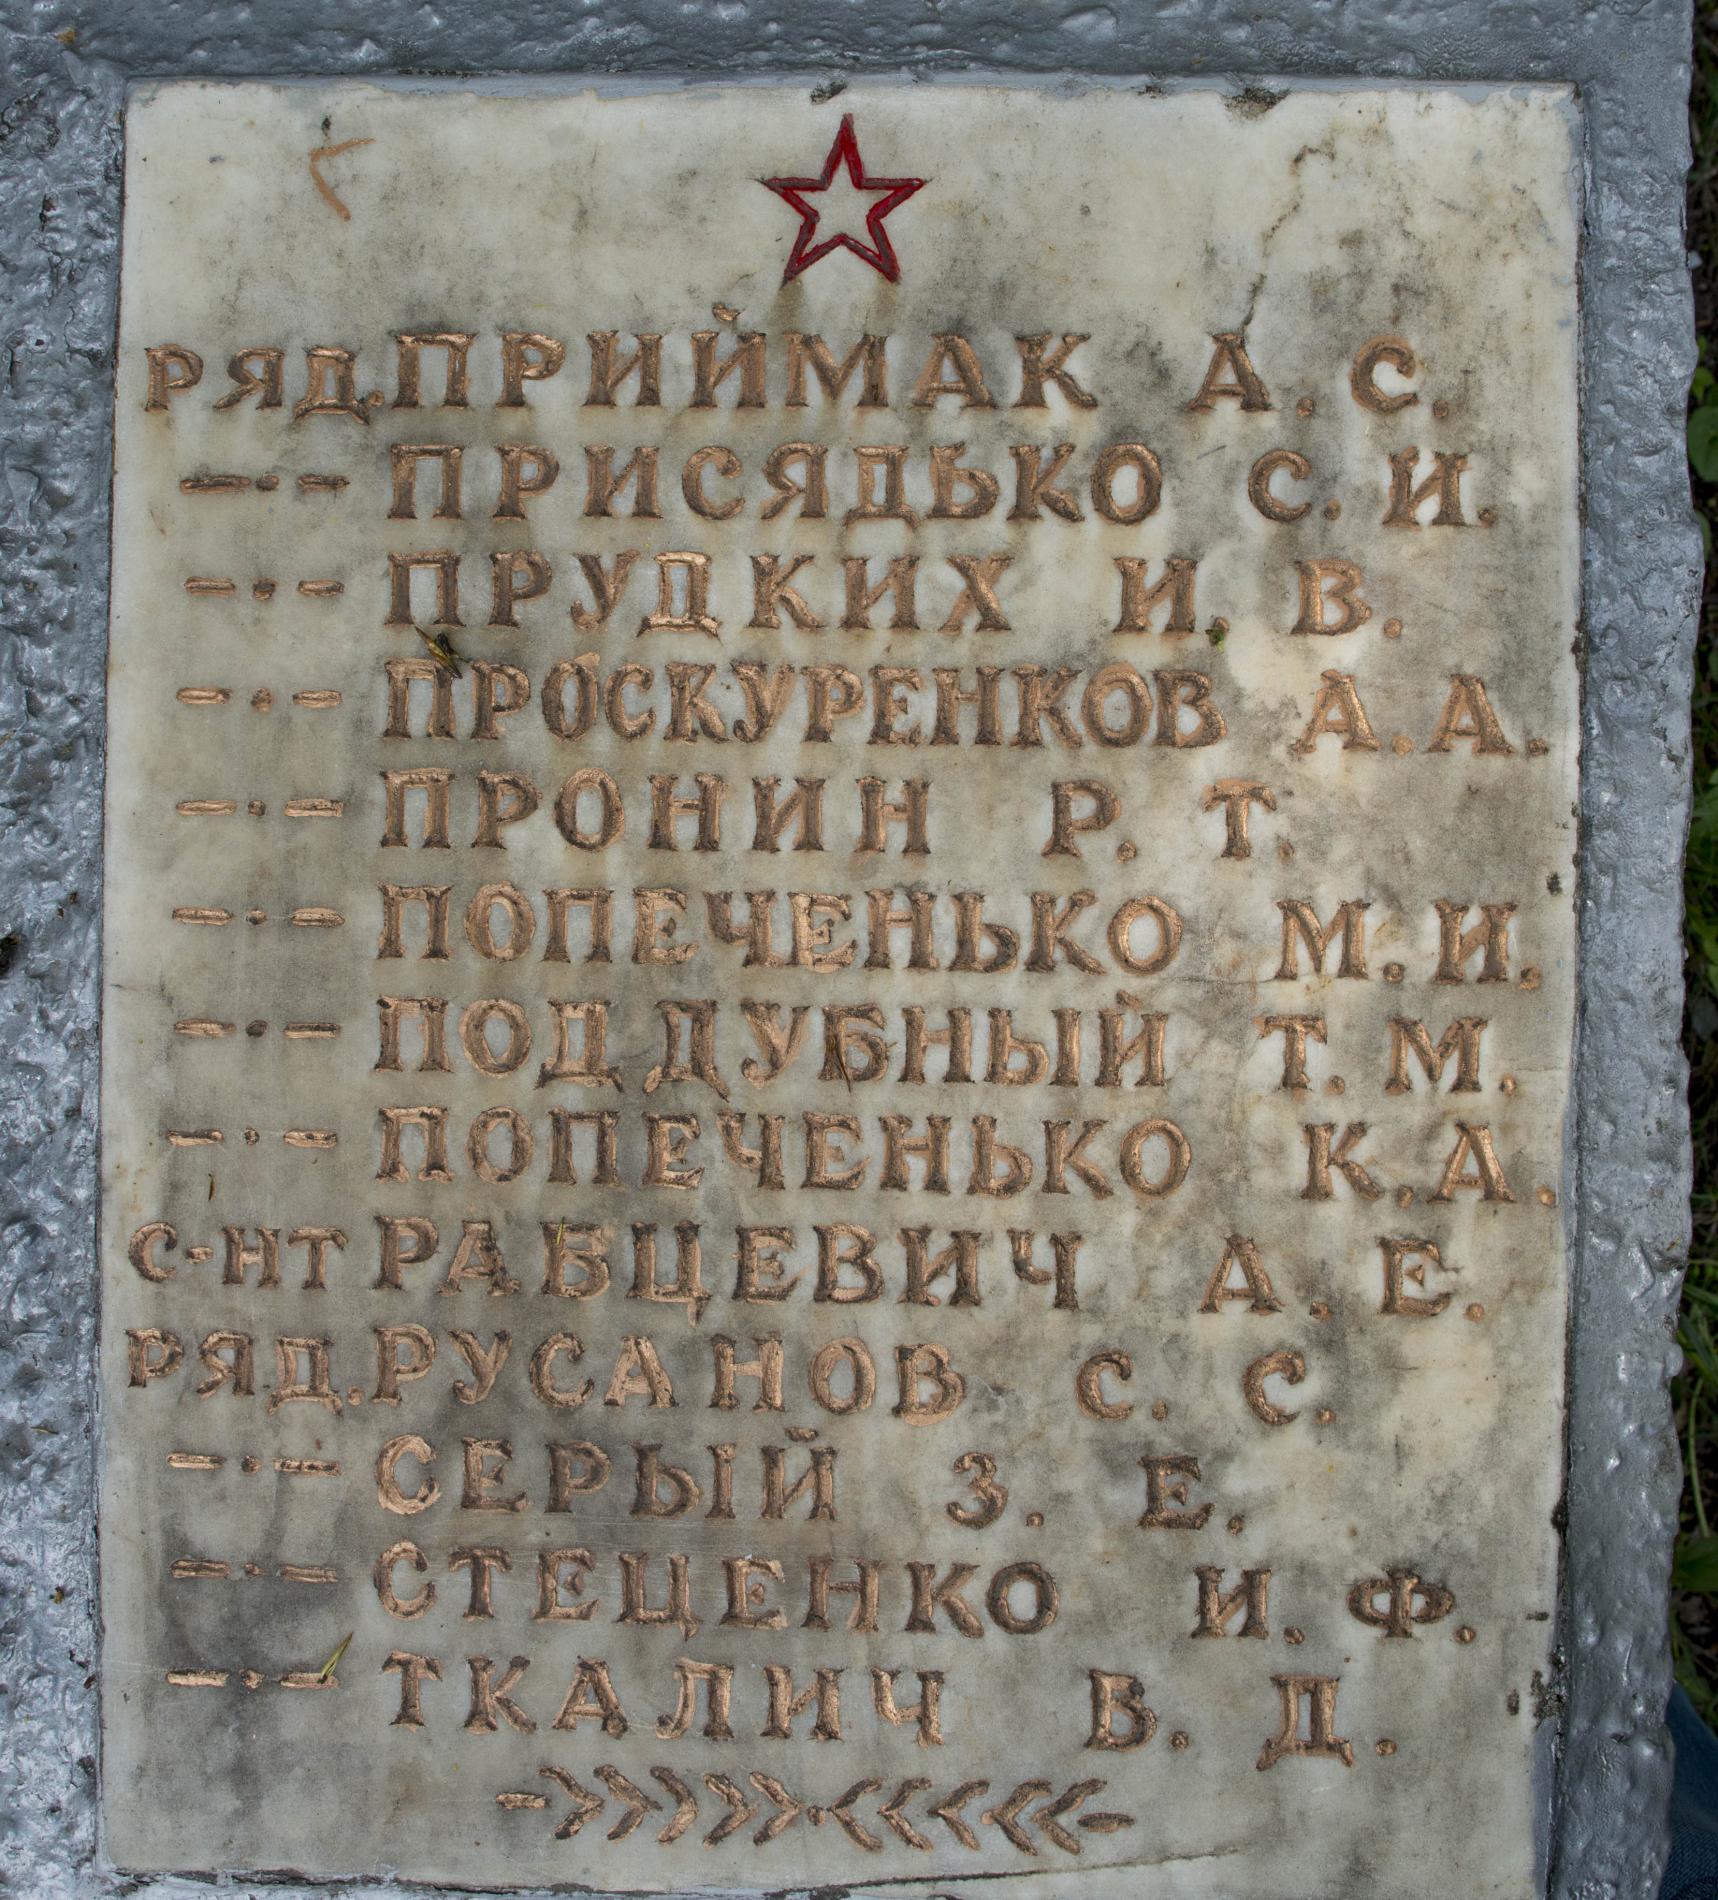 Братская могила на кладбище в с. Синяк Вышгородского района